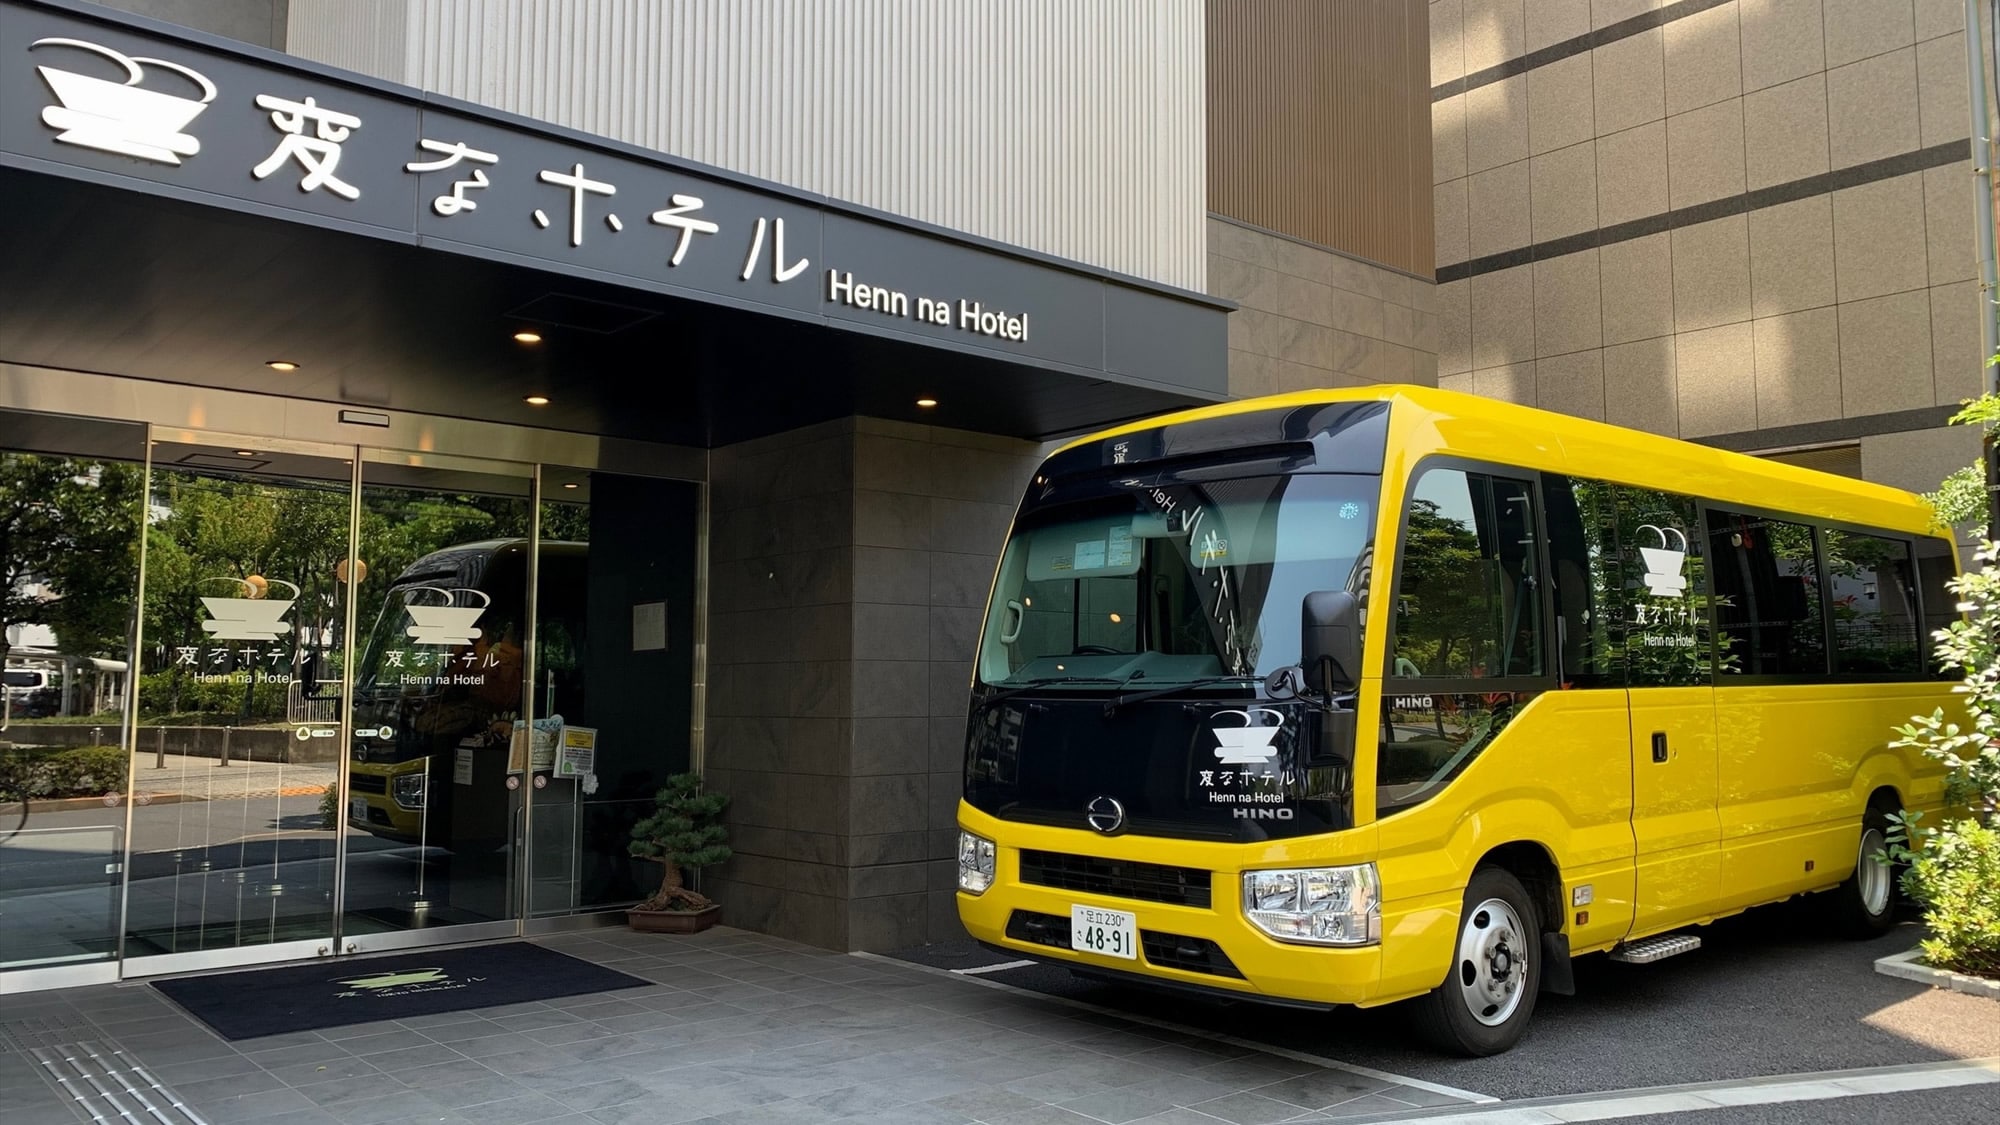  每天都有前往東京迪士尼度假區的免費穿梭巴士（約30分鐘）運行！